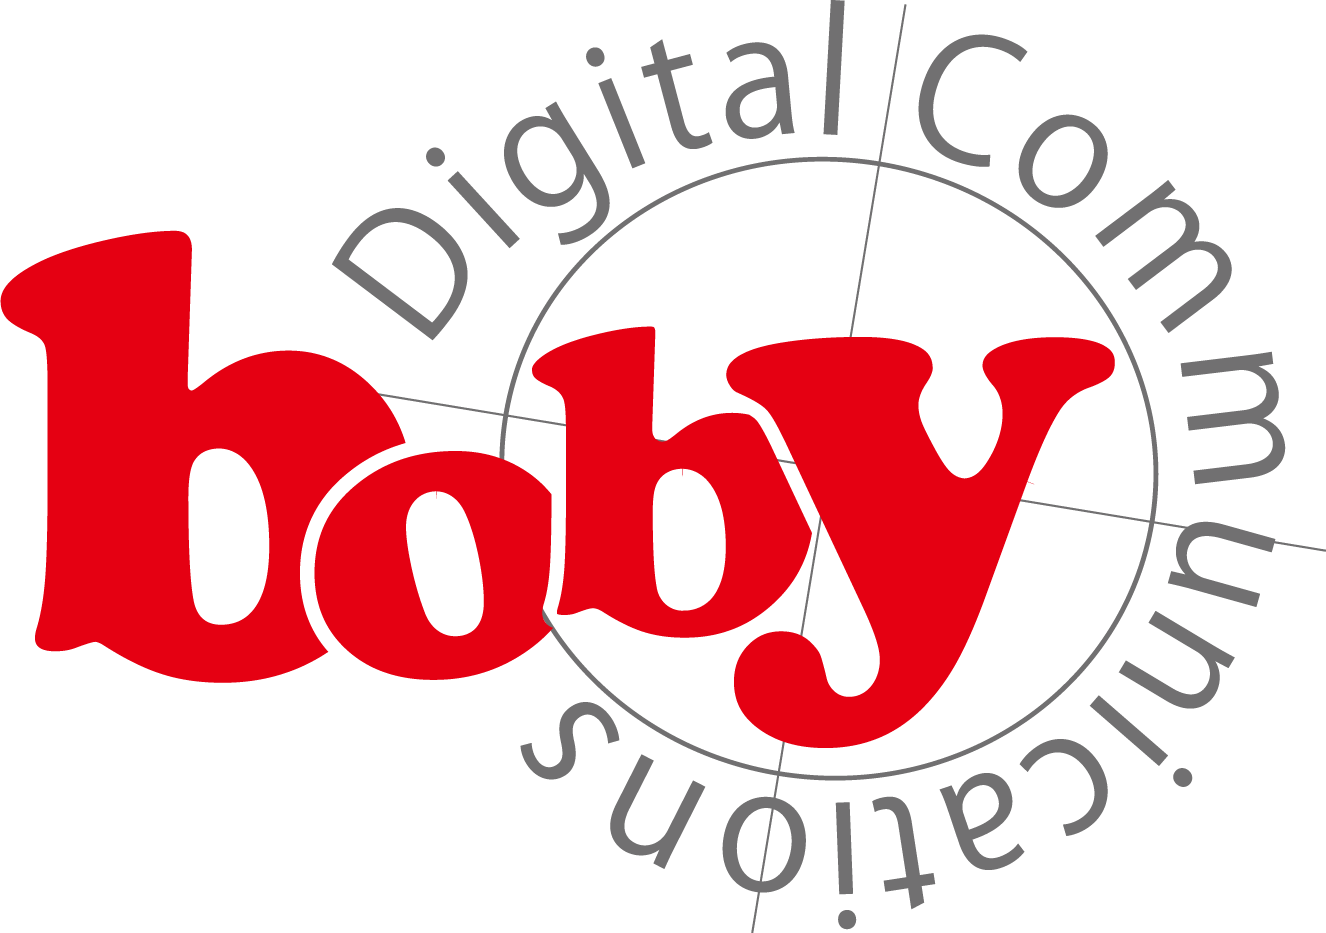 boby DigitalCommunications